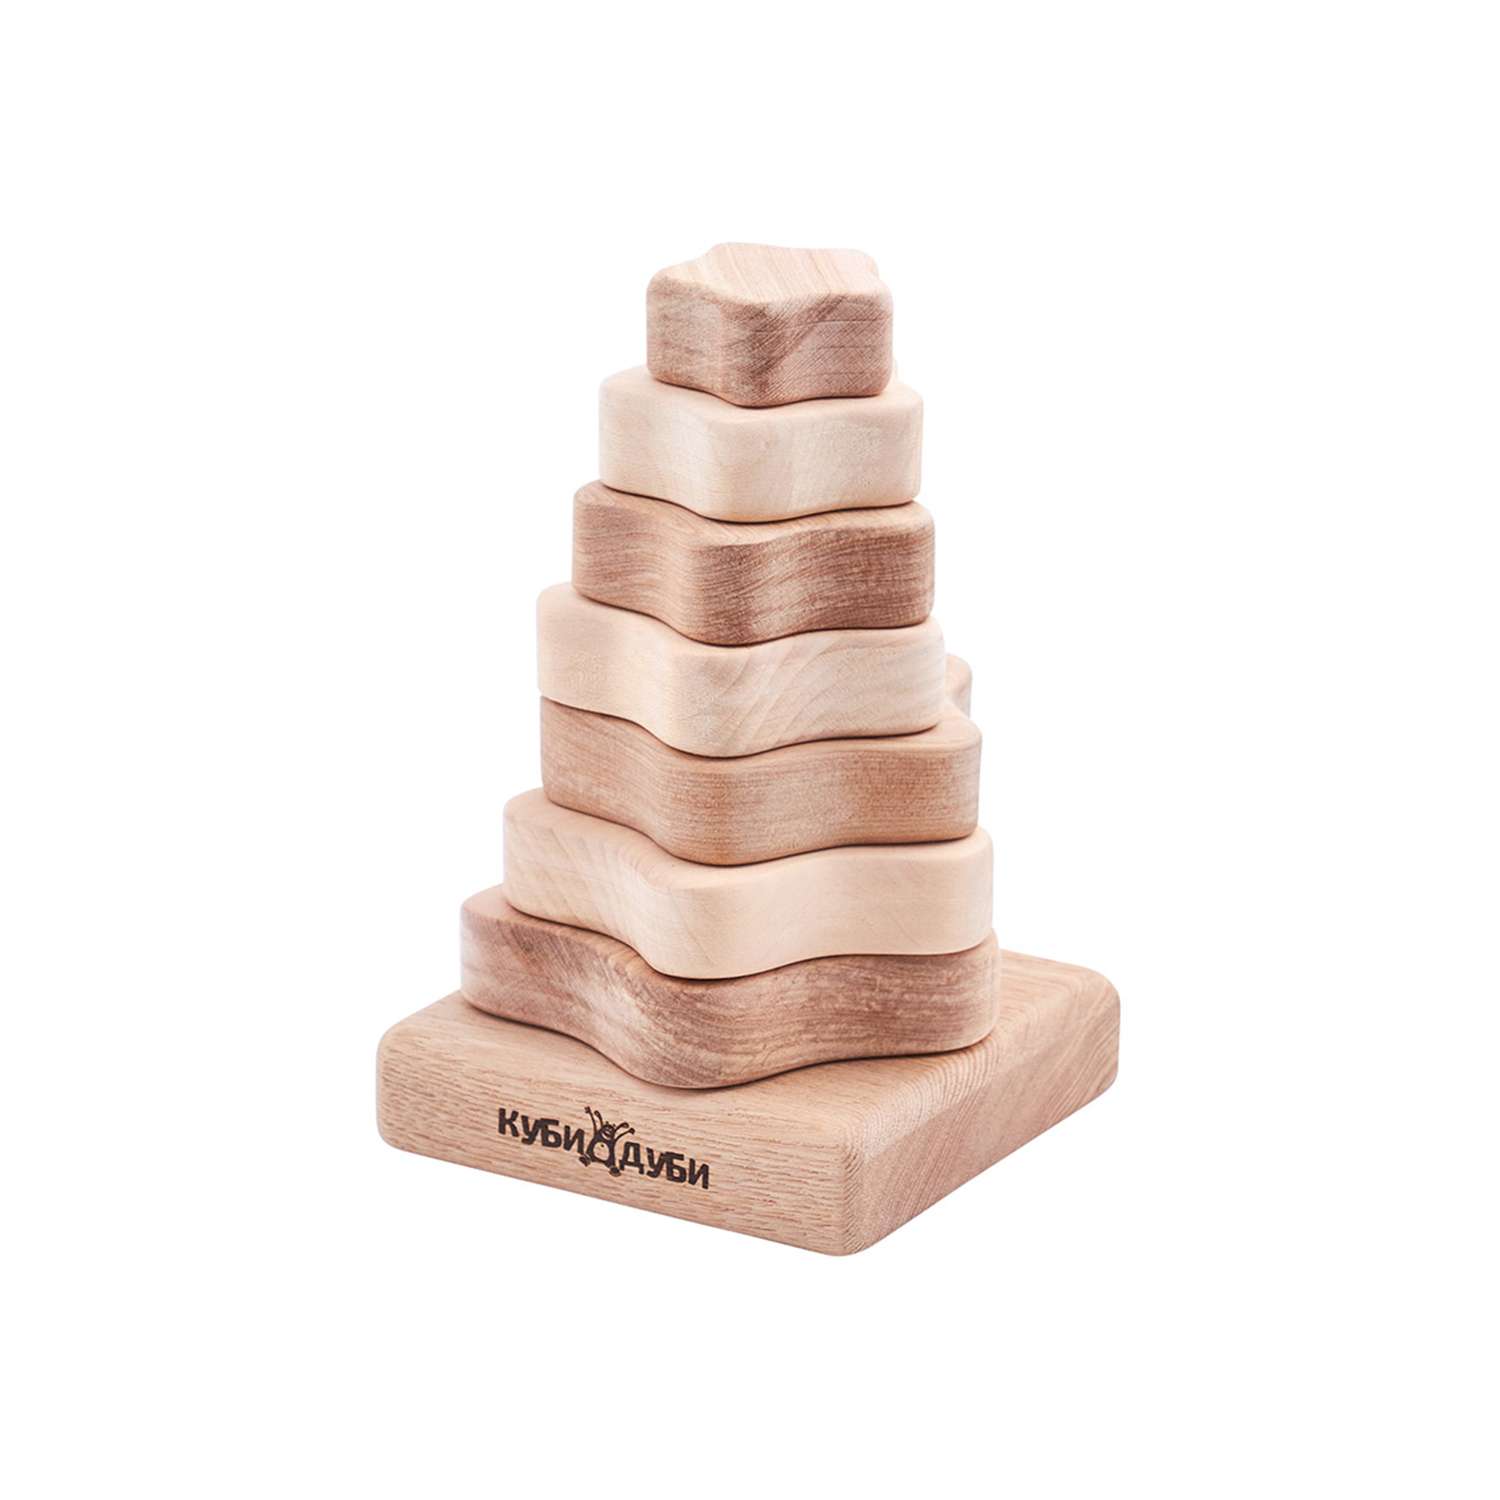 Пирамидка Куби дуби Модерн - фото 1